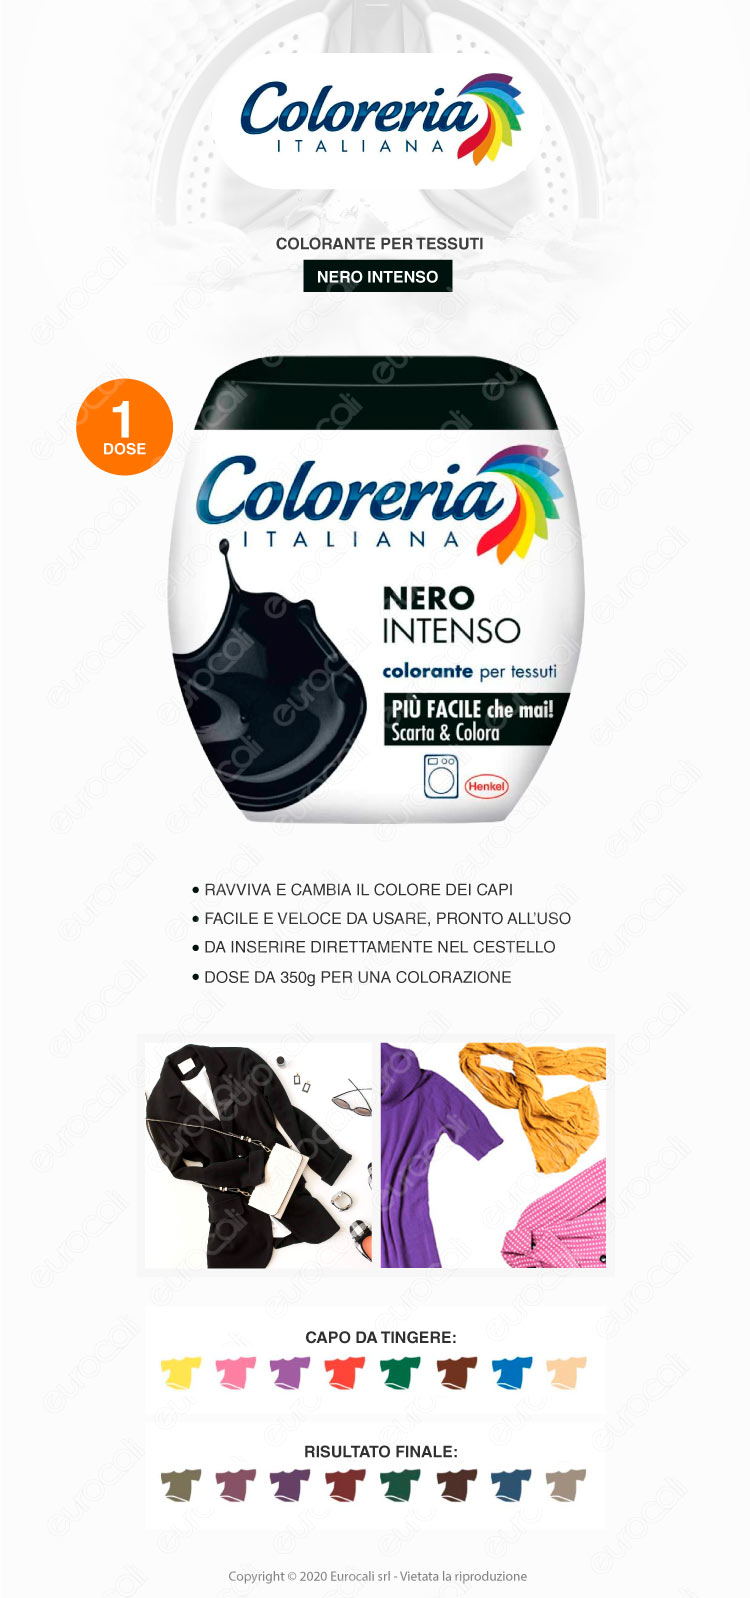 coloreria italiana grey - colorante per tessuti in lavatrice vari colori